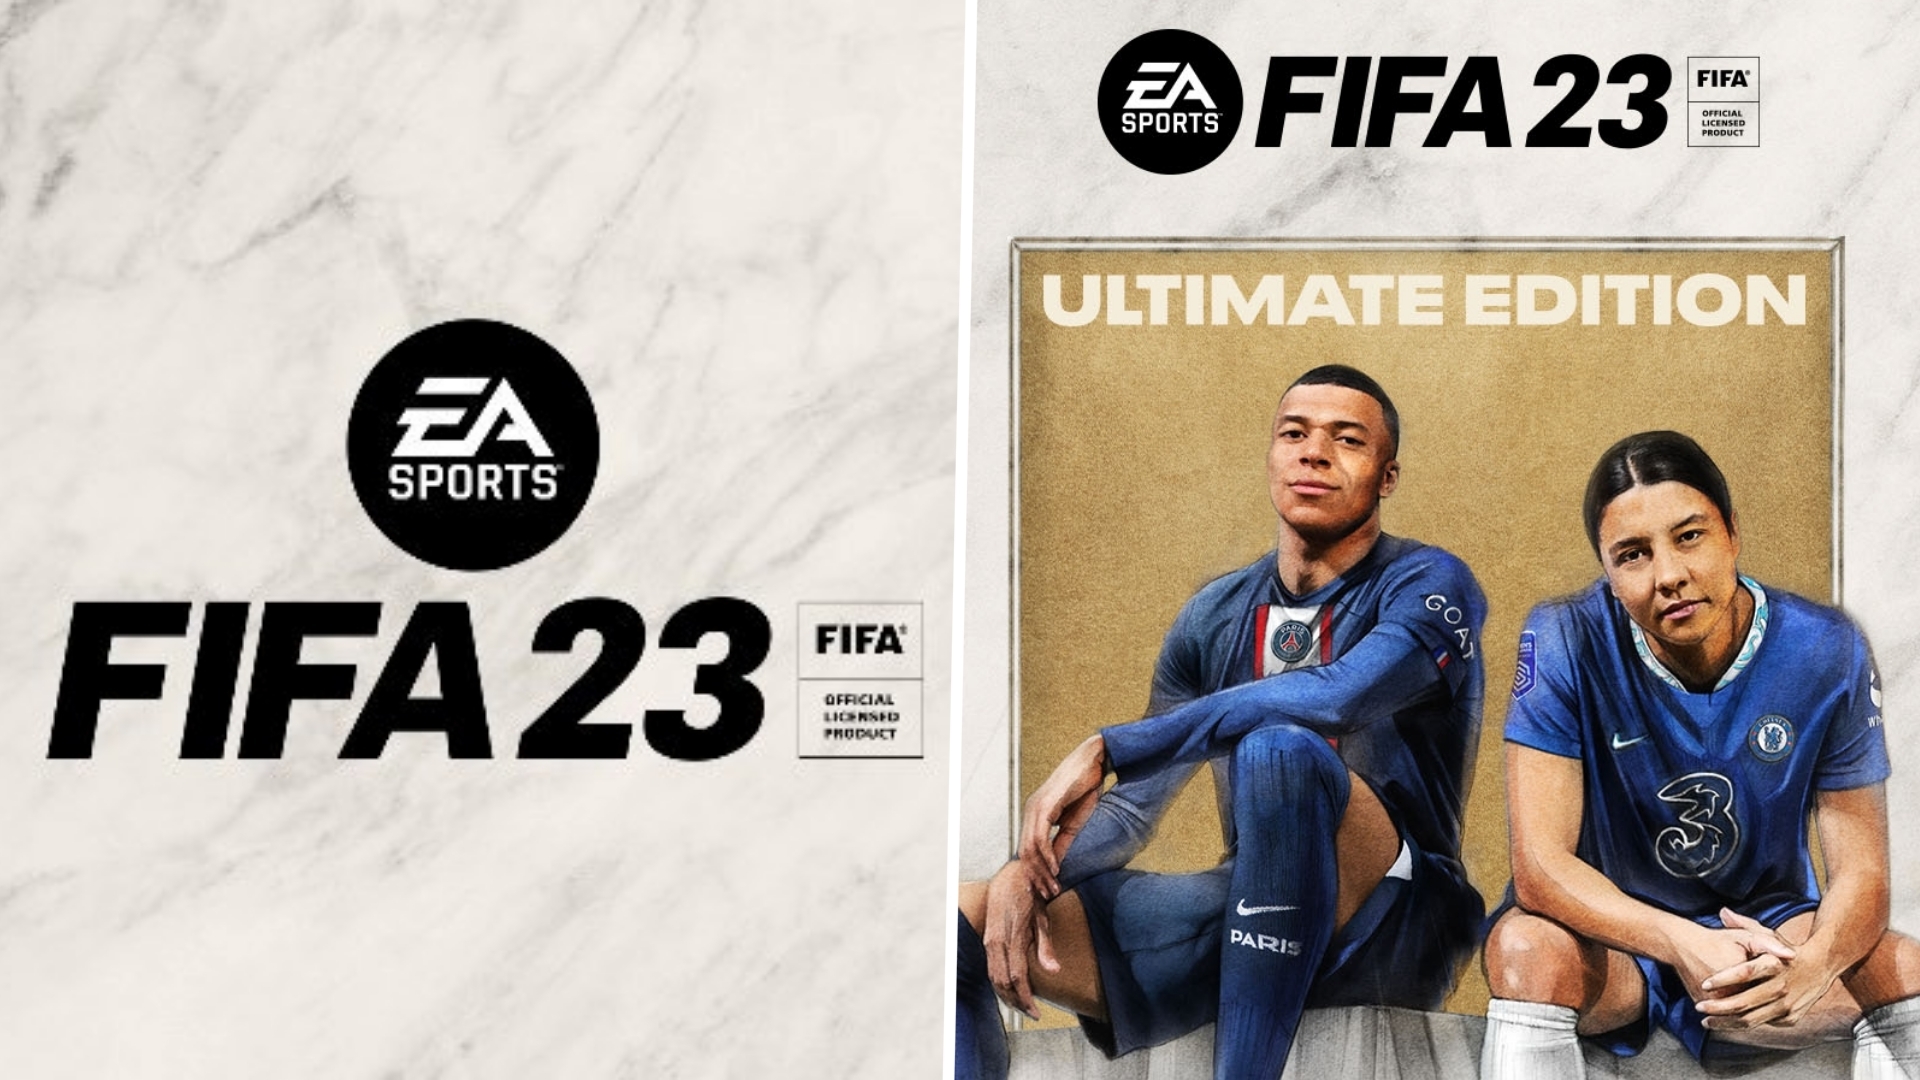 英國新一周實體游戲銷量榜 《FIFA 23》重新登頂